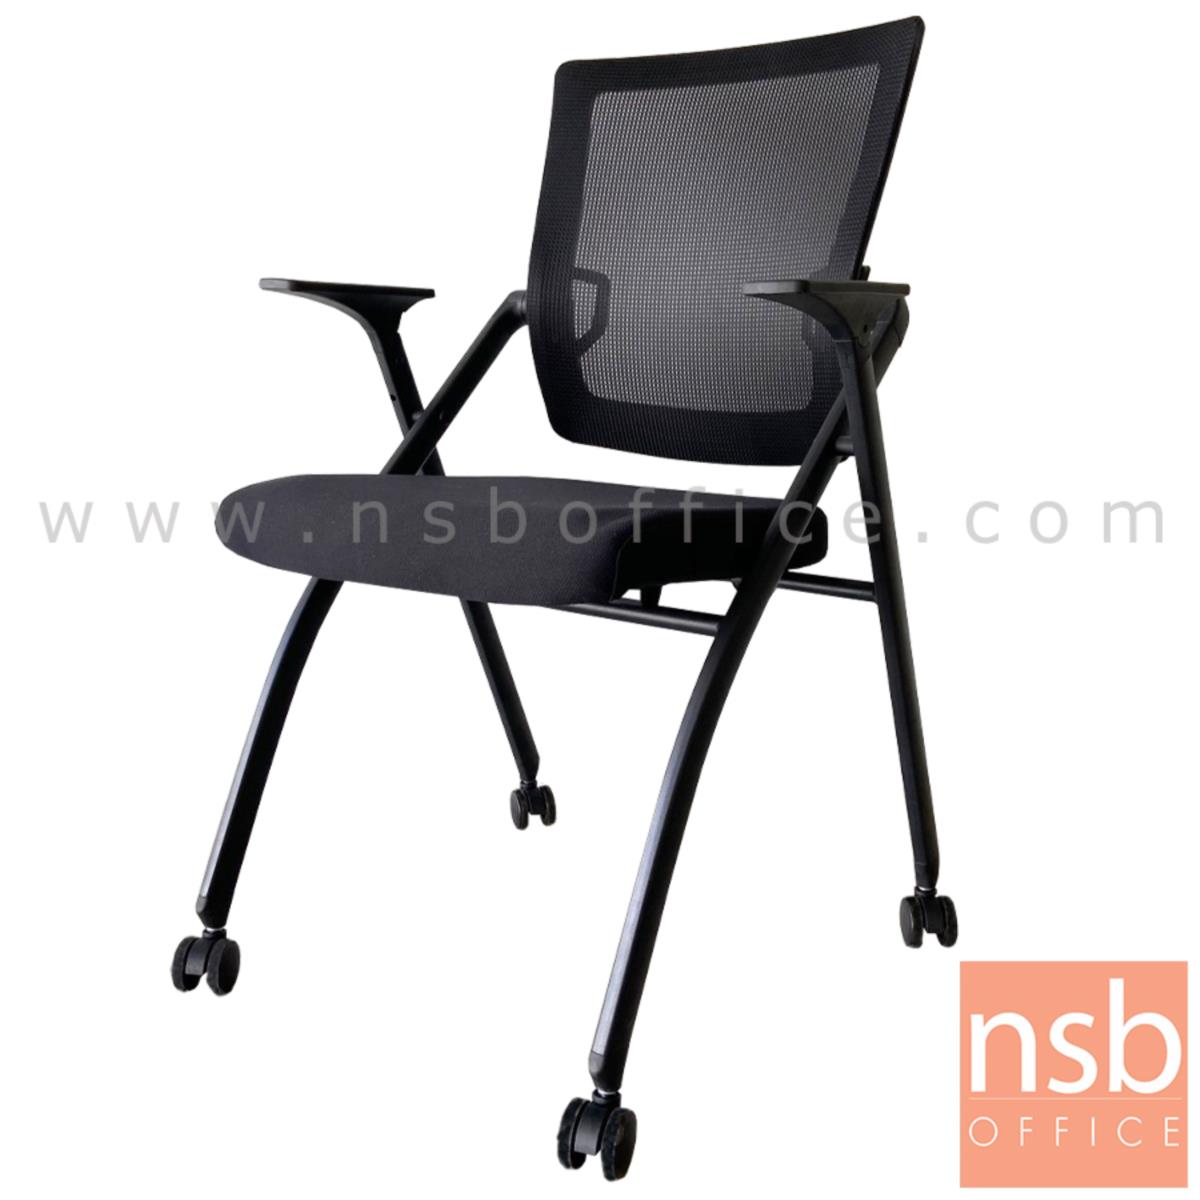 B30A058:เก้าอี้สำนักงานหลังเน็ต รุ่น Daho (ดาโฮ)  ขาเหล็กพ่นสีดำ 